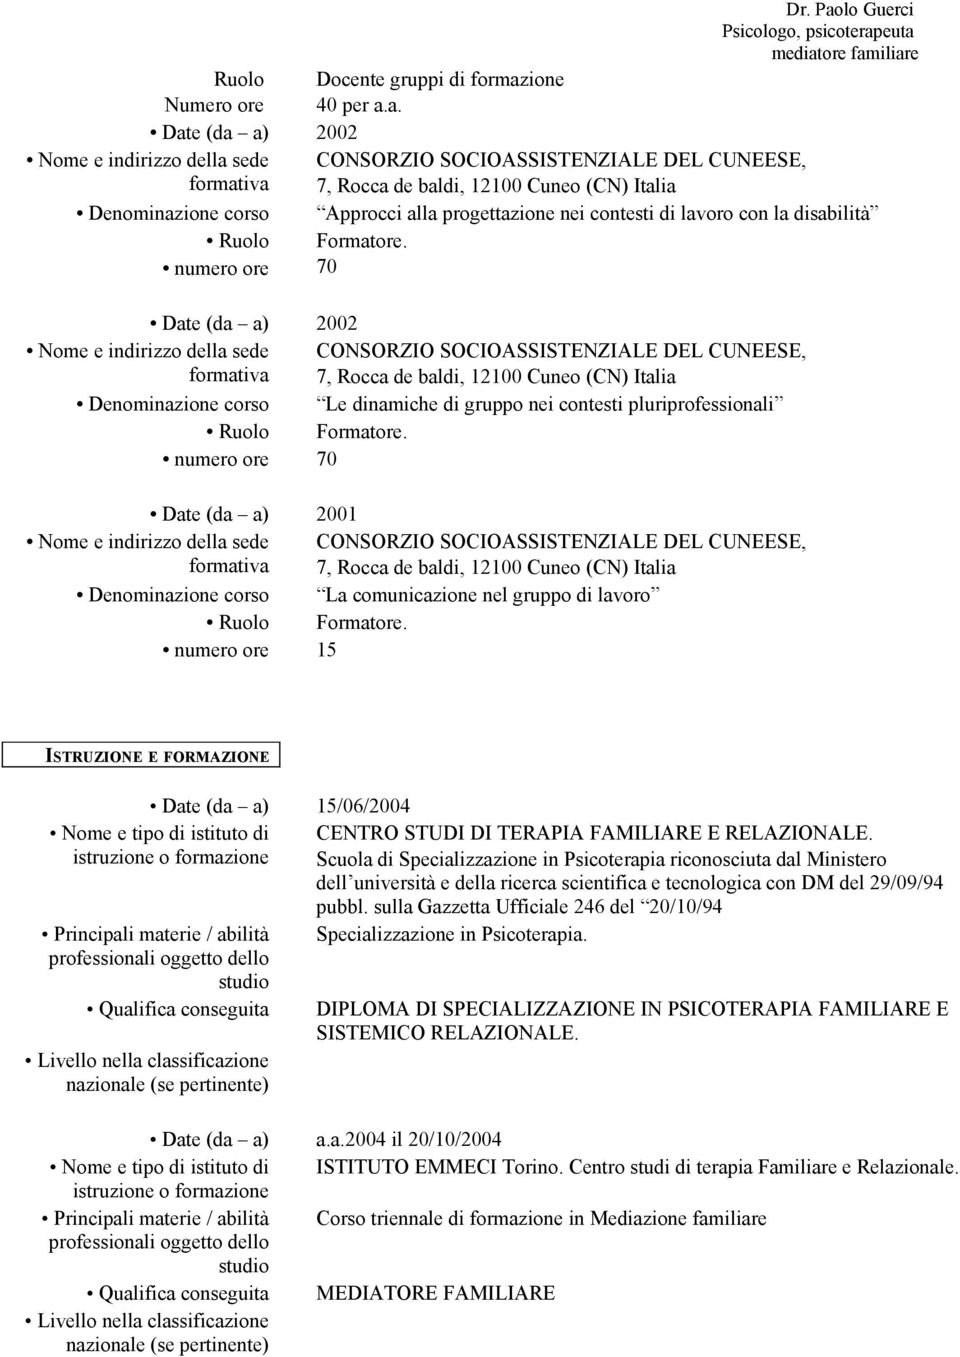 a. 2002 CONSORZIO SOCIOASSISTENZIALE DEL CUNEESE, 7, Rocca de baldi, 12100 Cuneo (CN) Italia Denominazione corso Approcci alla progettazione nei contesti con la disabilità Ruolo Formatore.